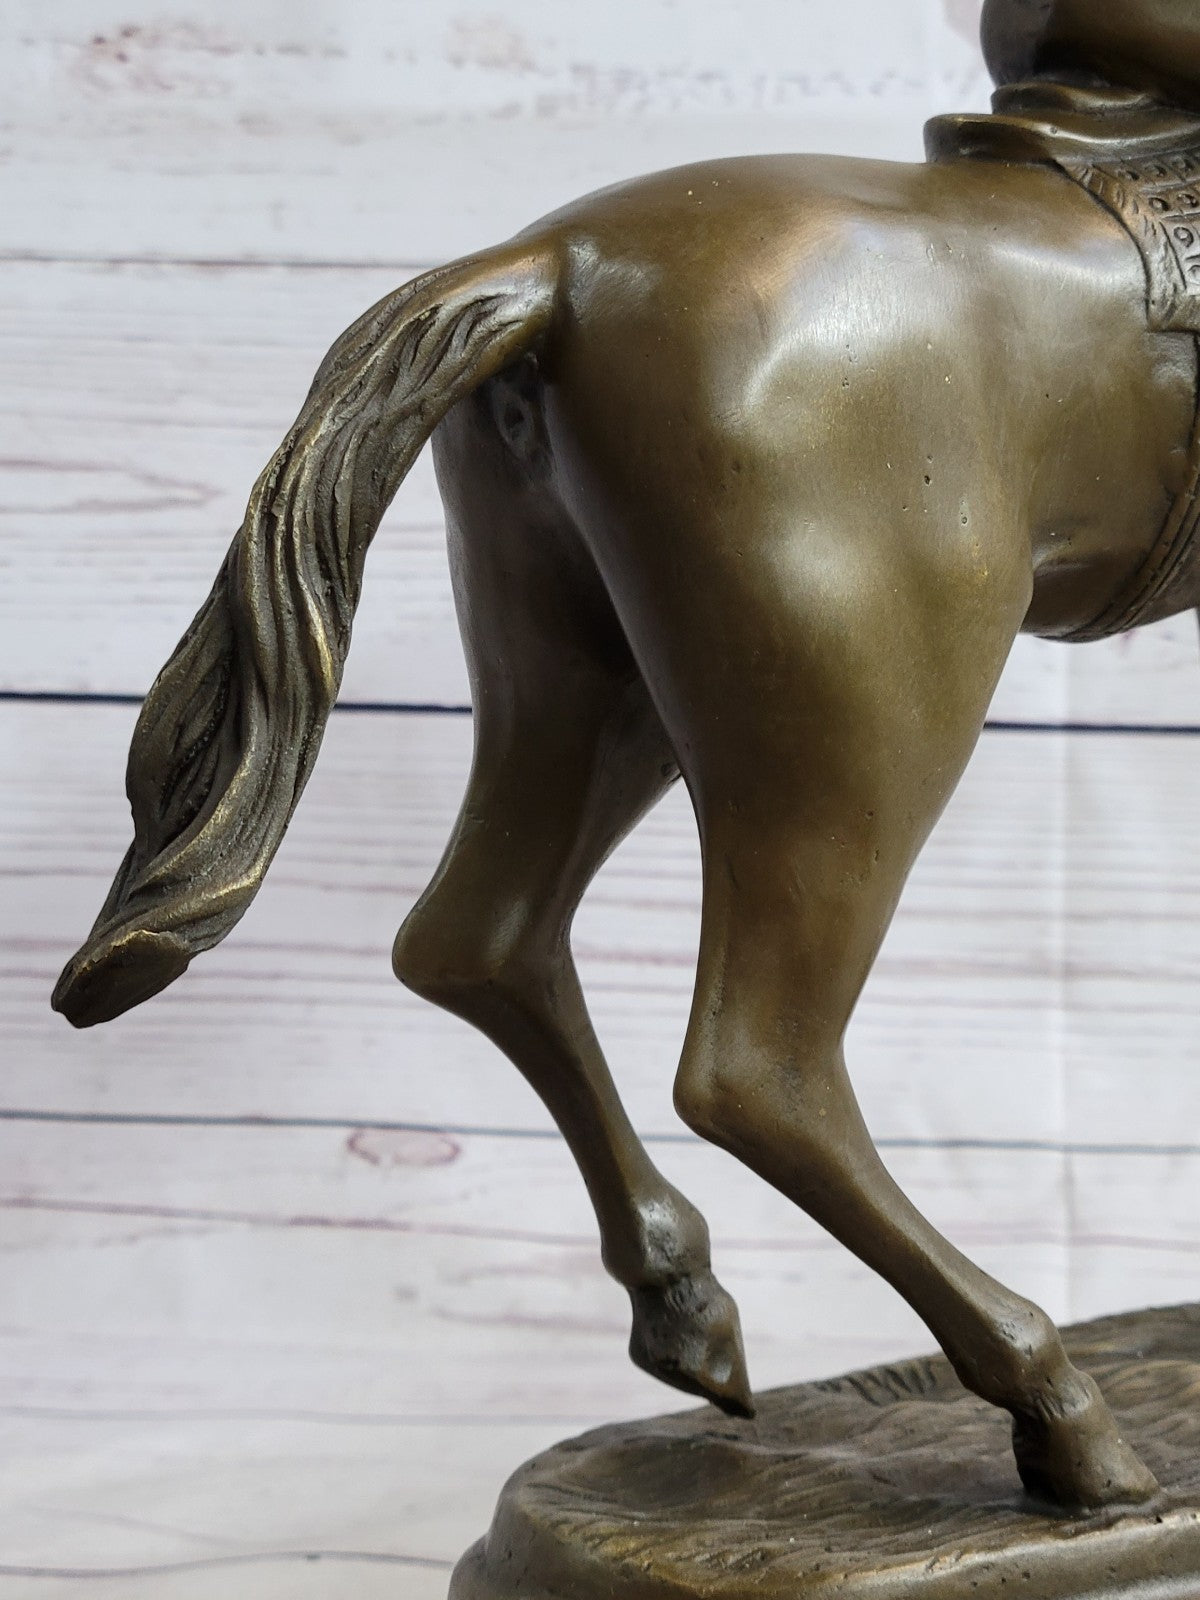 Jockey Riding Horse Home Decoration Bronze Sculpture Statue Figurine Figure Sale